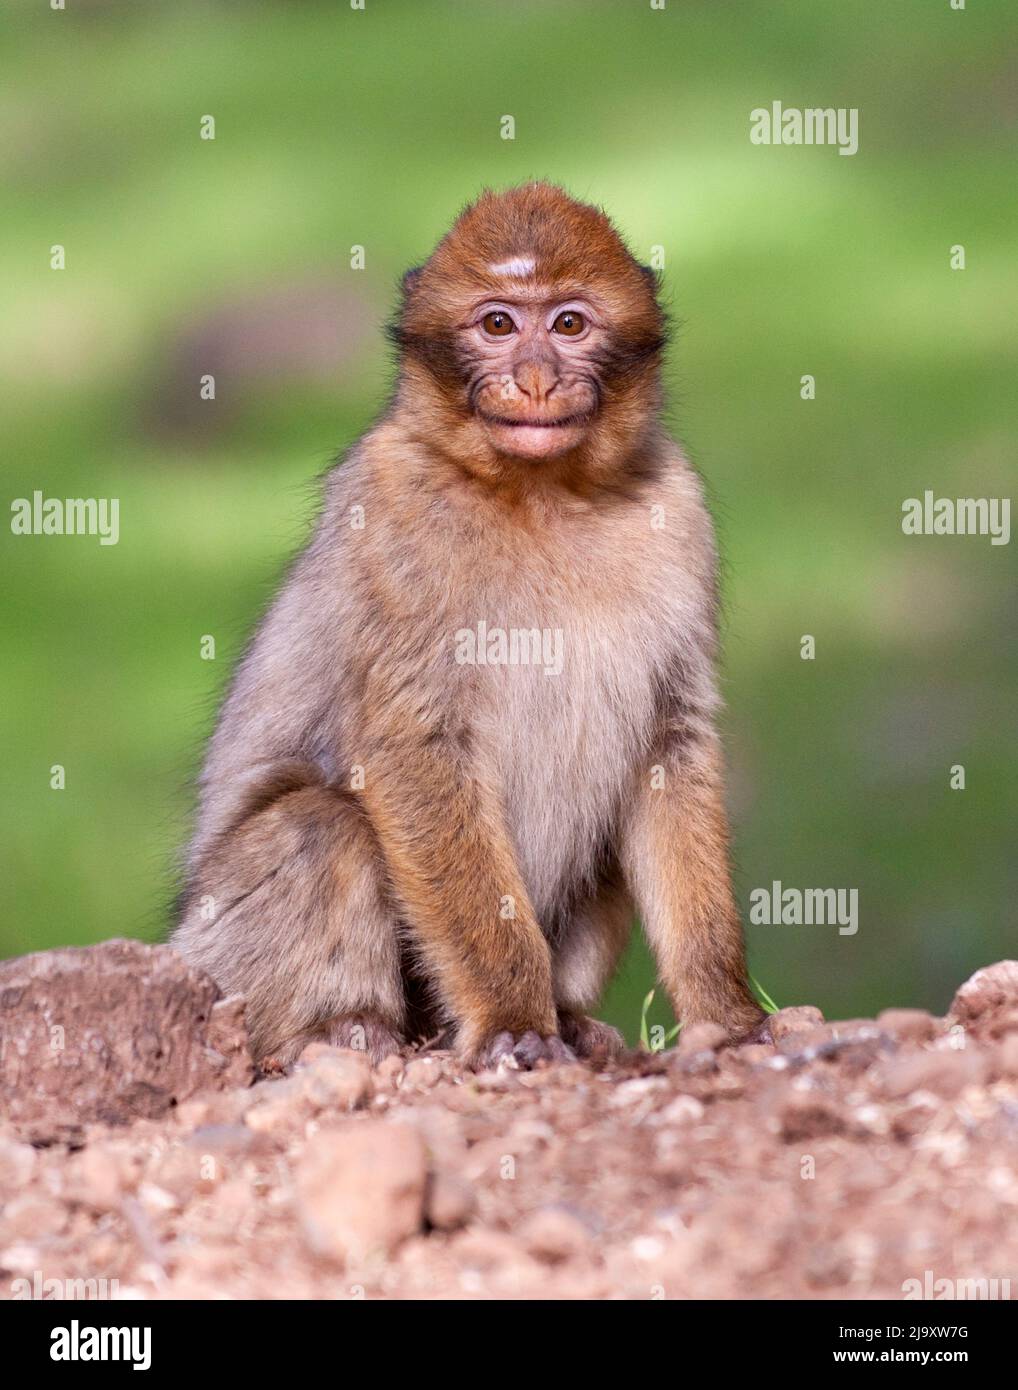 Une macaque de Barbarie, également connue sous le nom d'APE de Barbarie, de la forêt de cèdre de la région du Moyen Atlas du Maroc. Banque D'Images